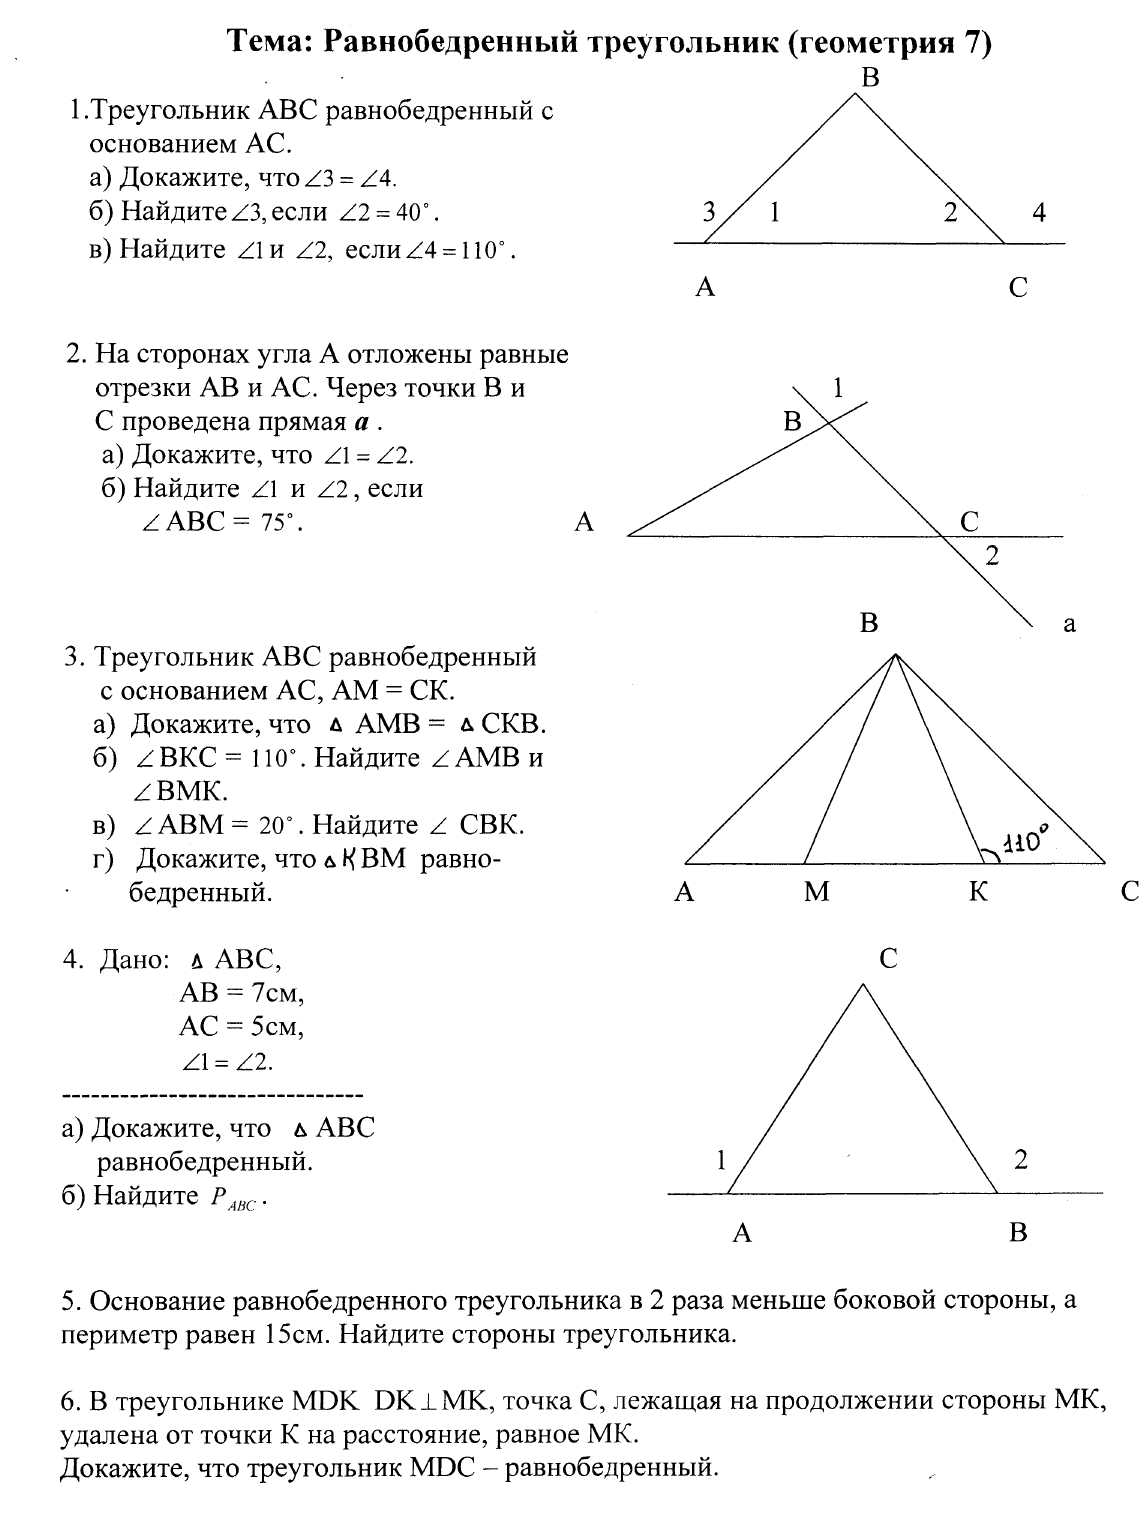 Практикум по теме Равнобедренный треугольник (? класс)